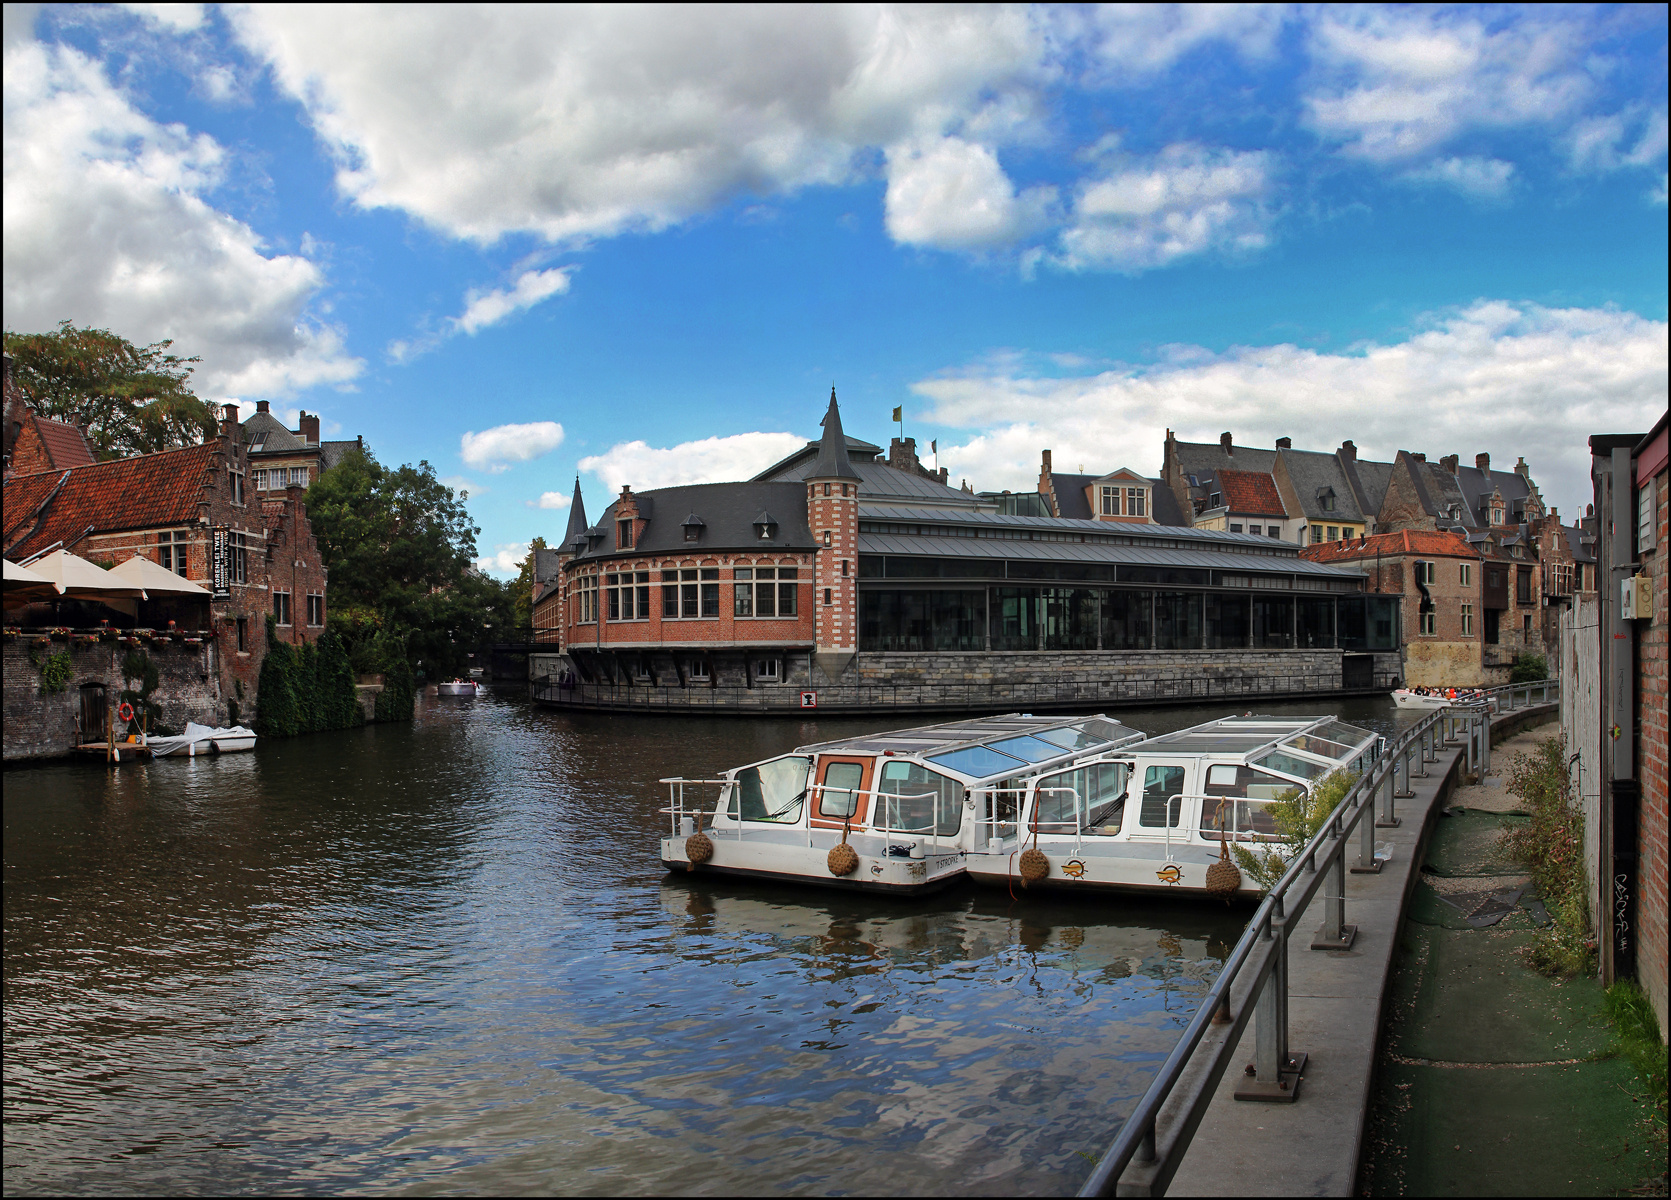 Бельгия. Гент (Gent). Каналы и мосты. Европа Бельгия Гент достопримечательности набережные каналы рестораны площади мосты прогулочные лодочки